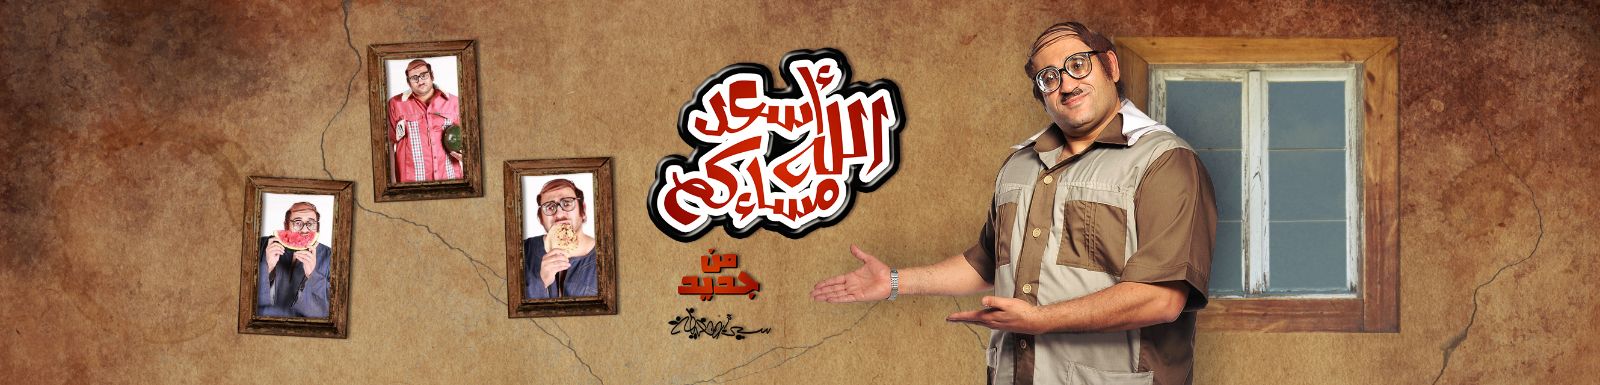 مشاهدة برنامج أسعد الله مسائكم , سيد أبو حفيظة الحلقة الثالثة اليوم الخميس 15-5-2014